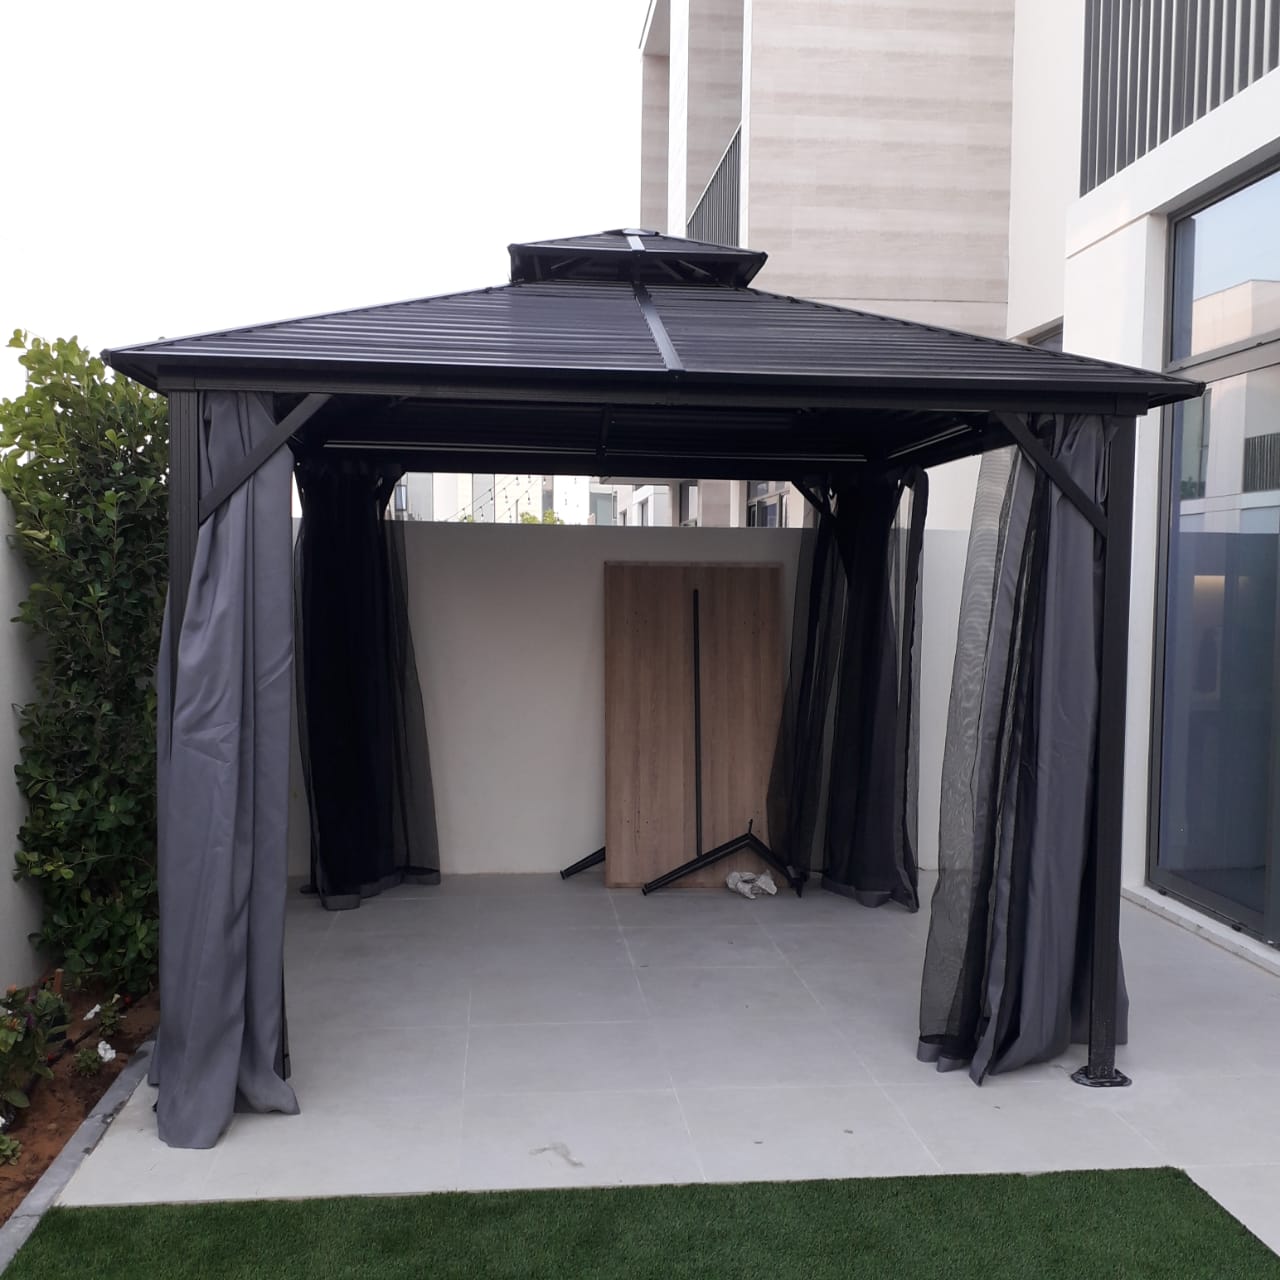 خيمة ألمنيوم باللون الأسود بسقف مزدوج بمقاس 3x3 متر photo review